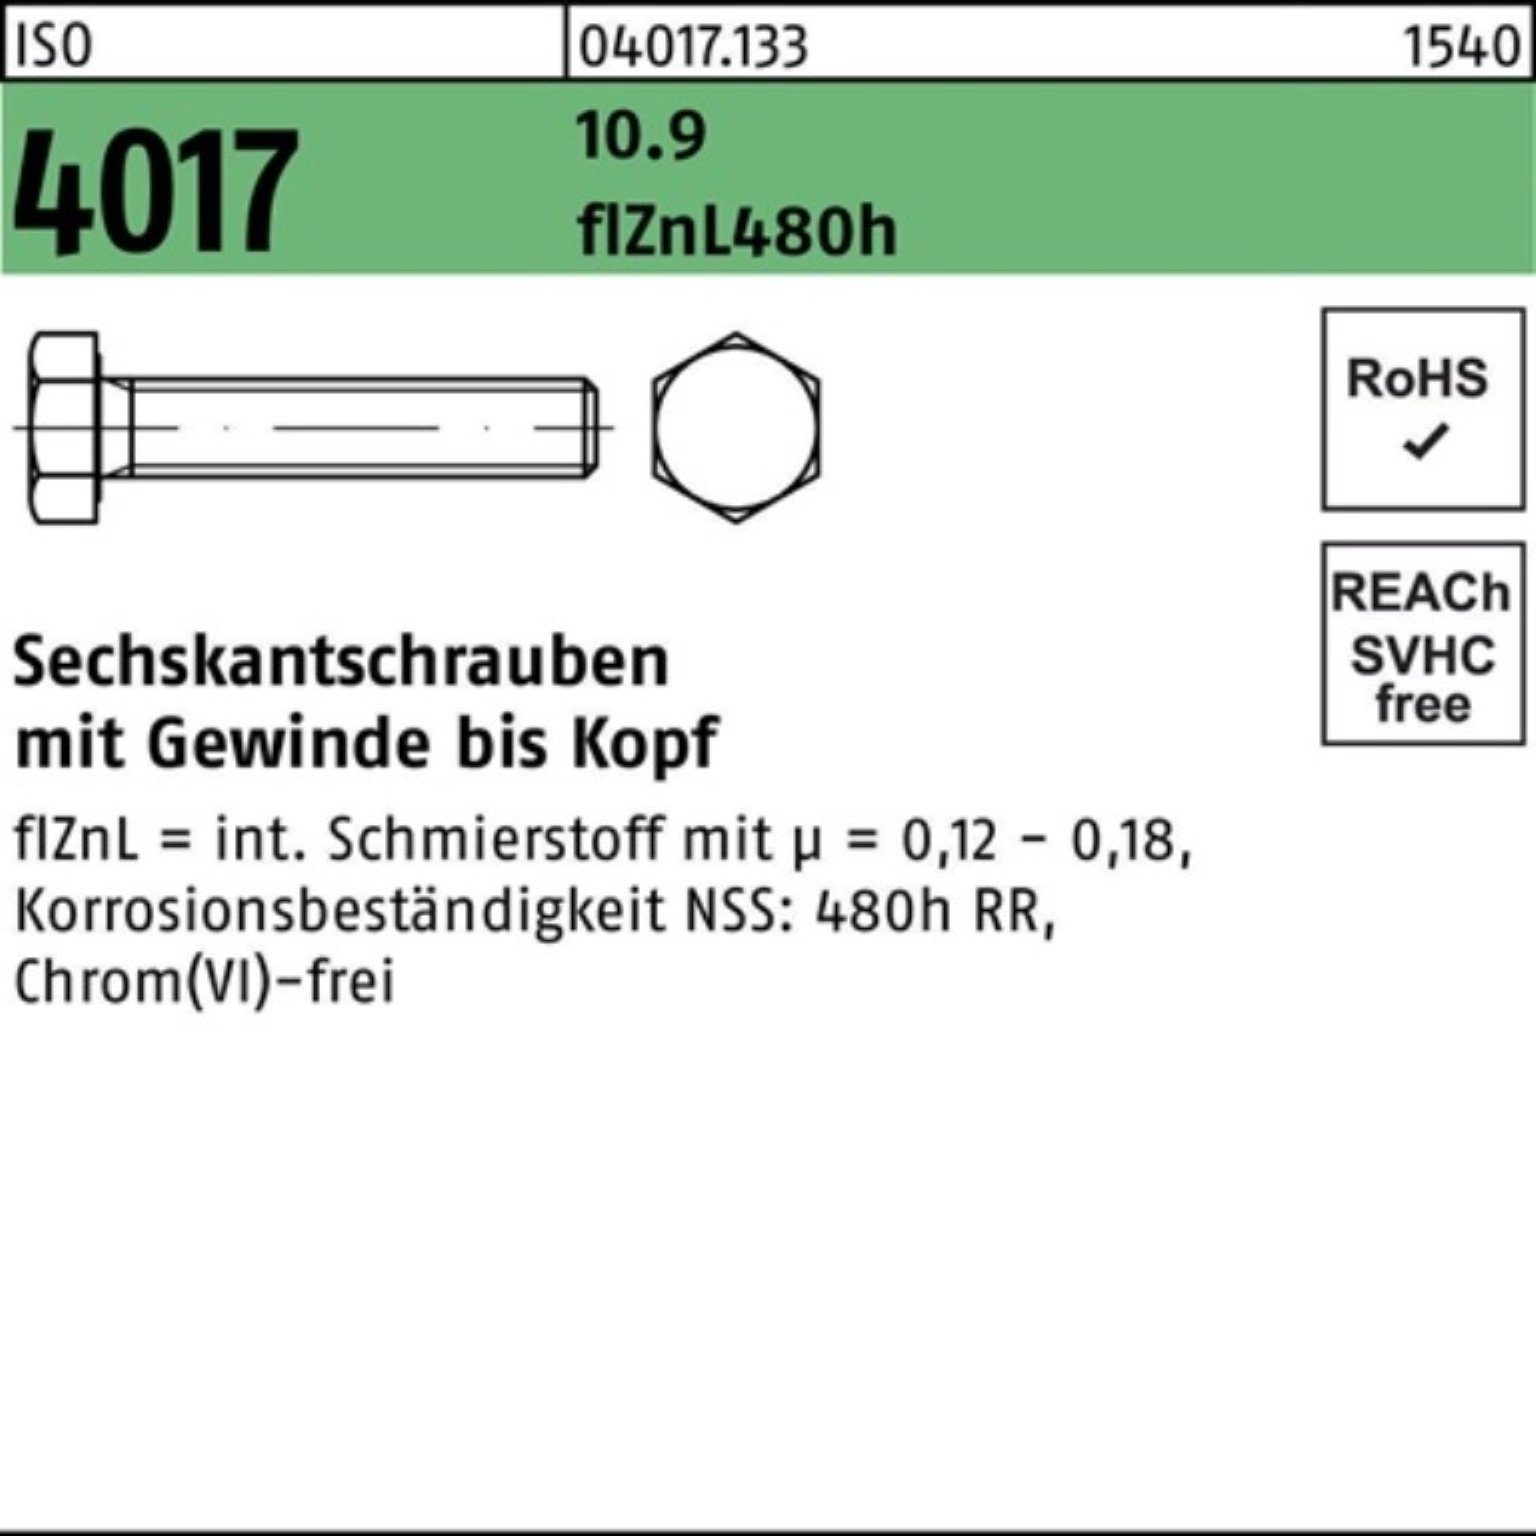 Sechskantschraube Pack VG 4017 Sechskantschraube Bufab 90 ISO M16x 100er 10.9 2 zinklamellenb.